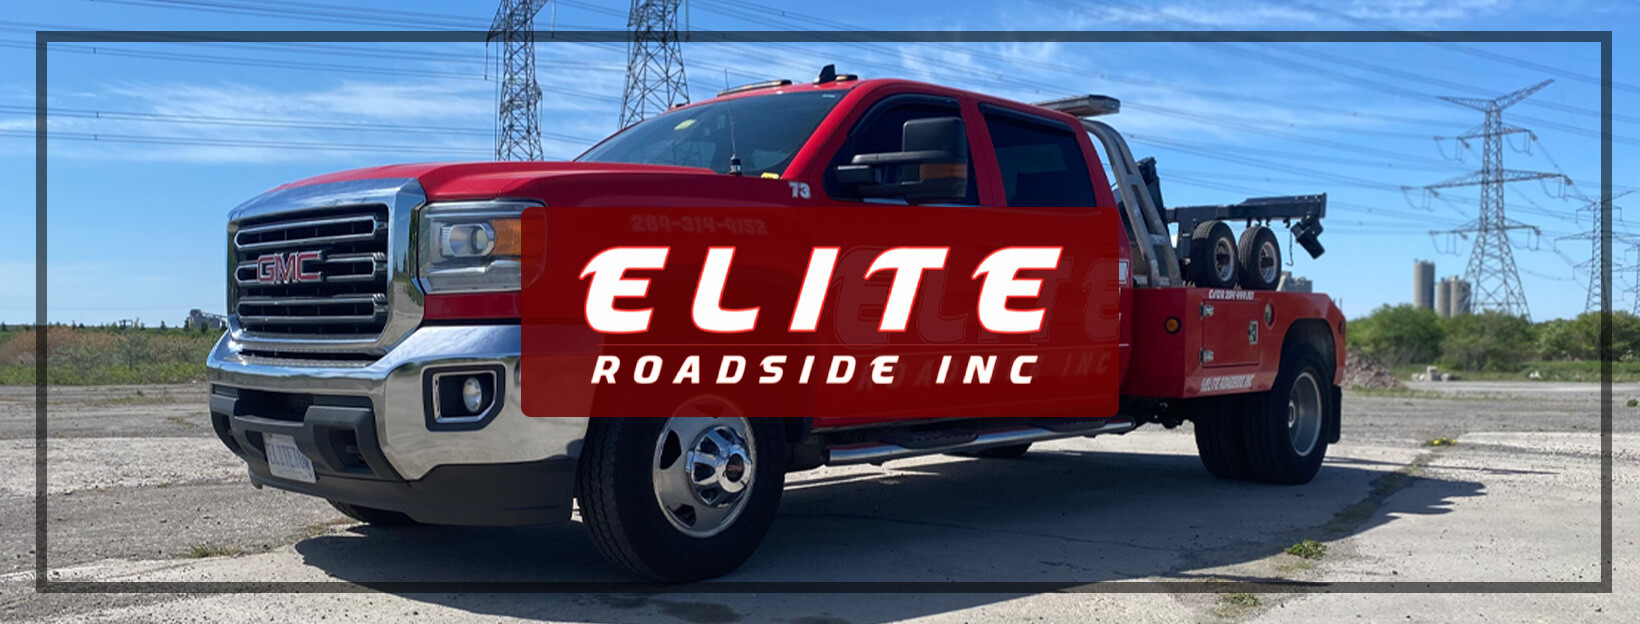 Winner Image - Elite Roadside Inc.